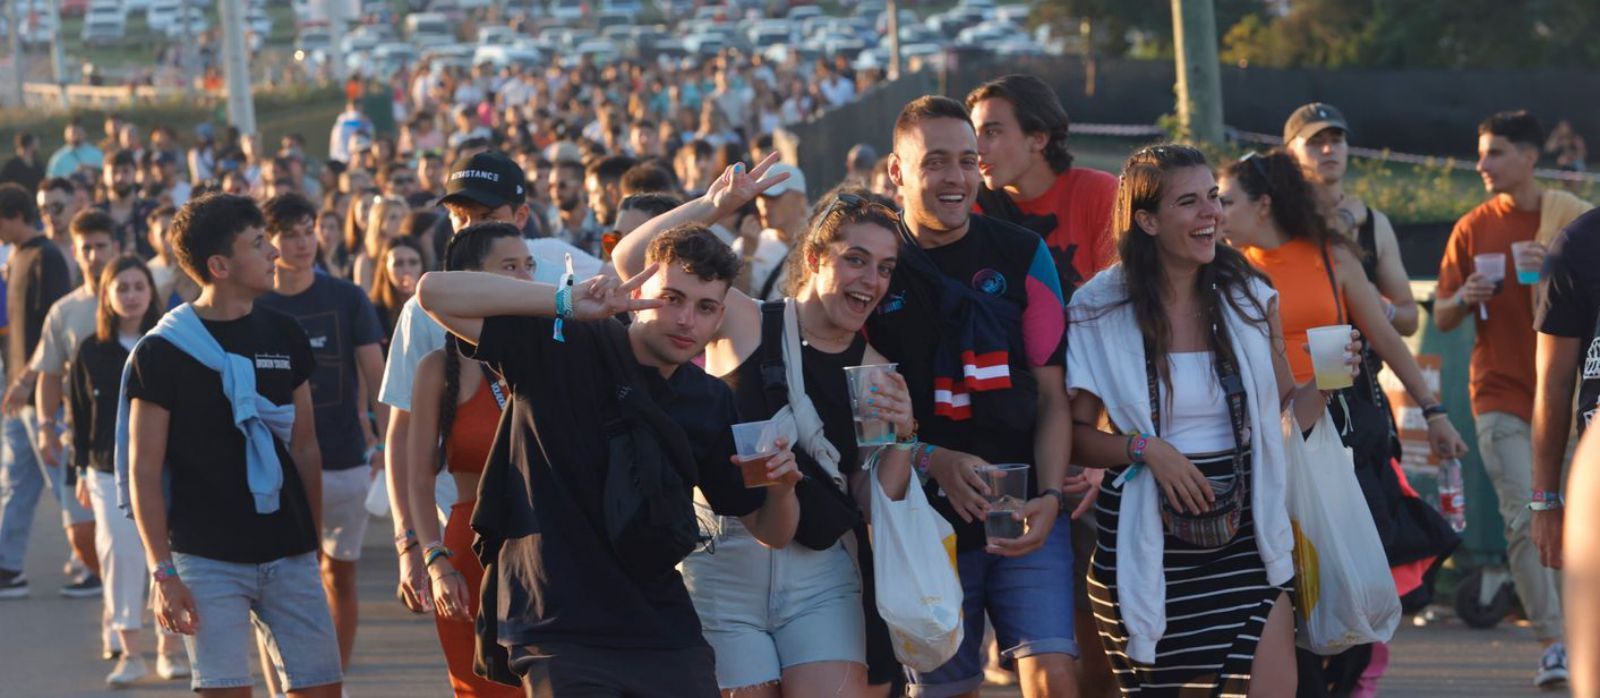 Centenares de jóvenes accediendo al festival para disfrutar de su última jornada.  